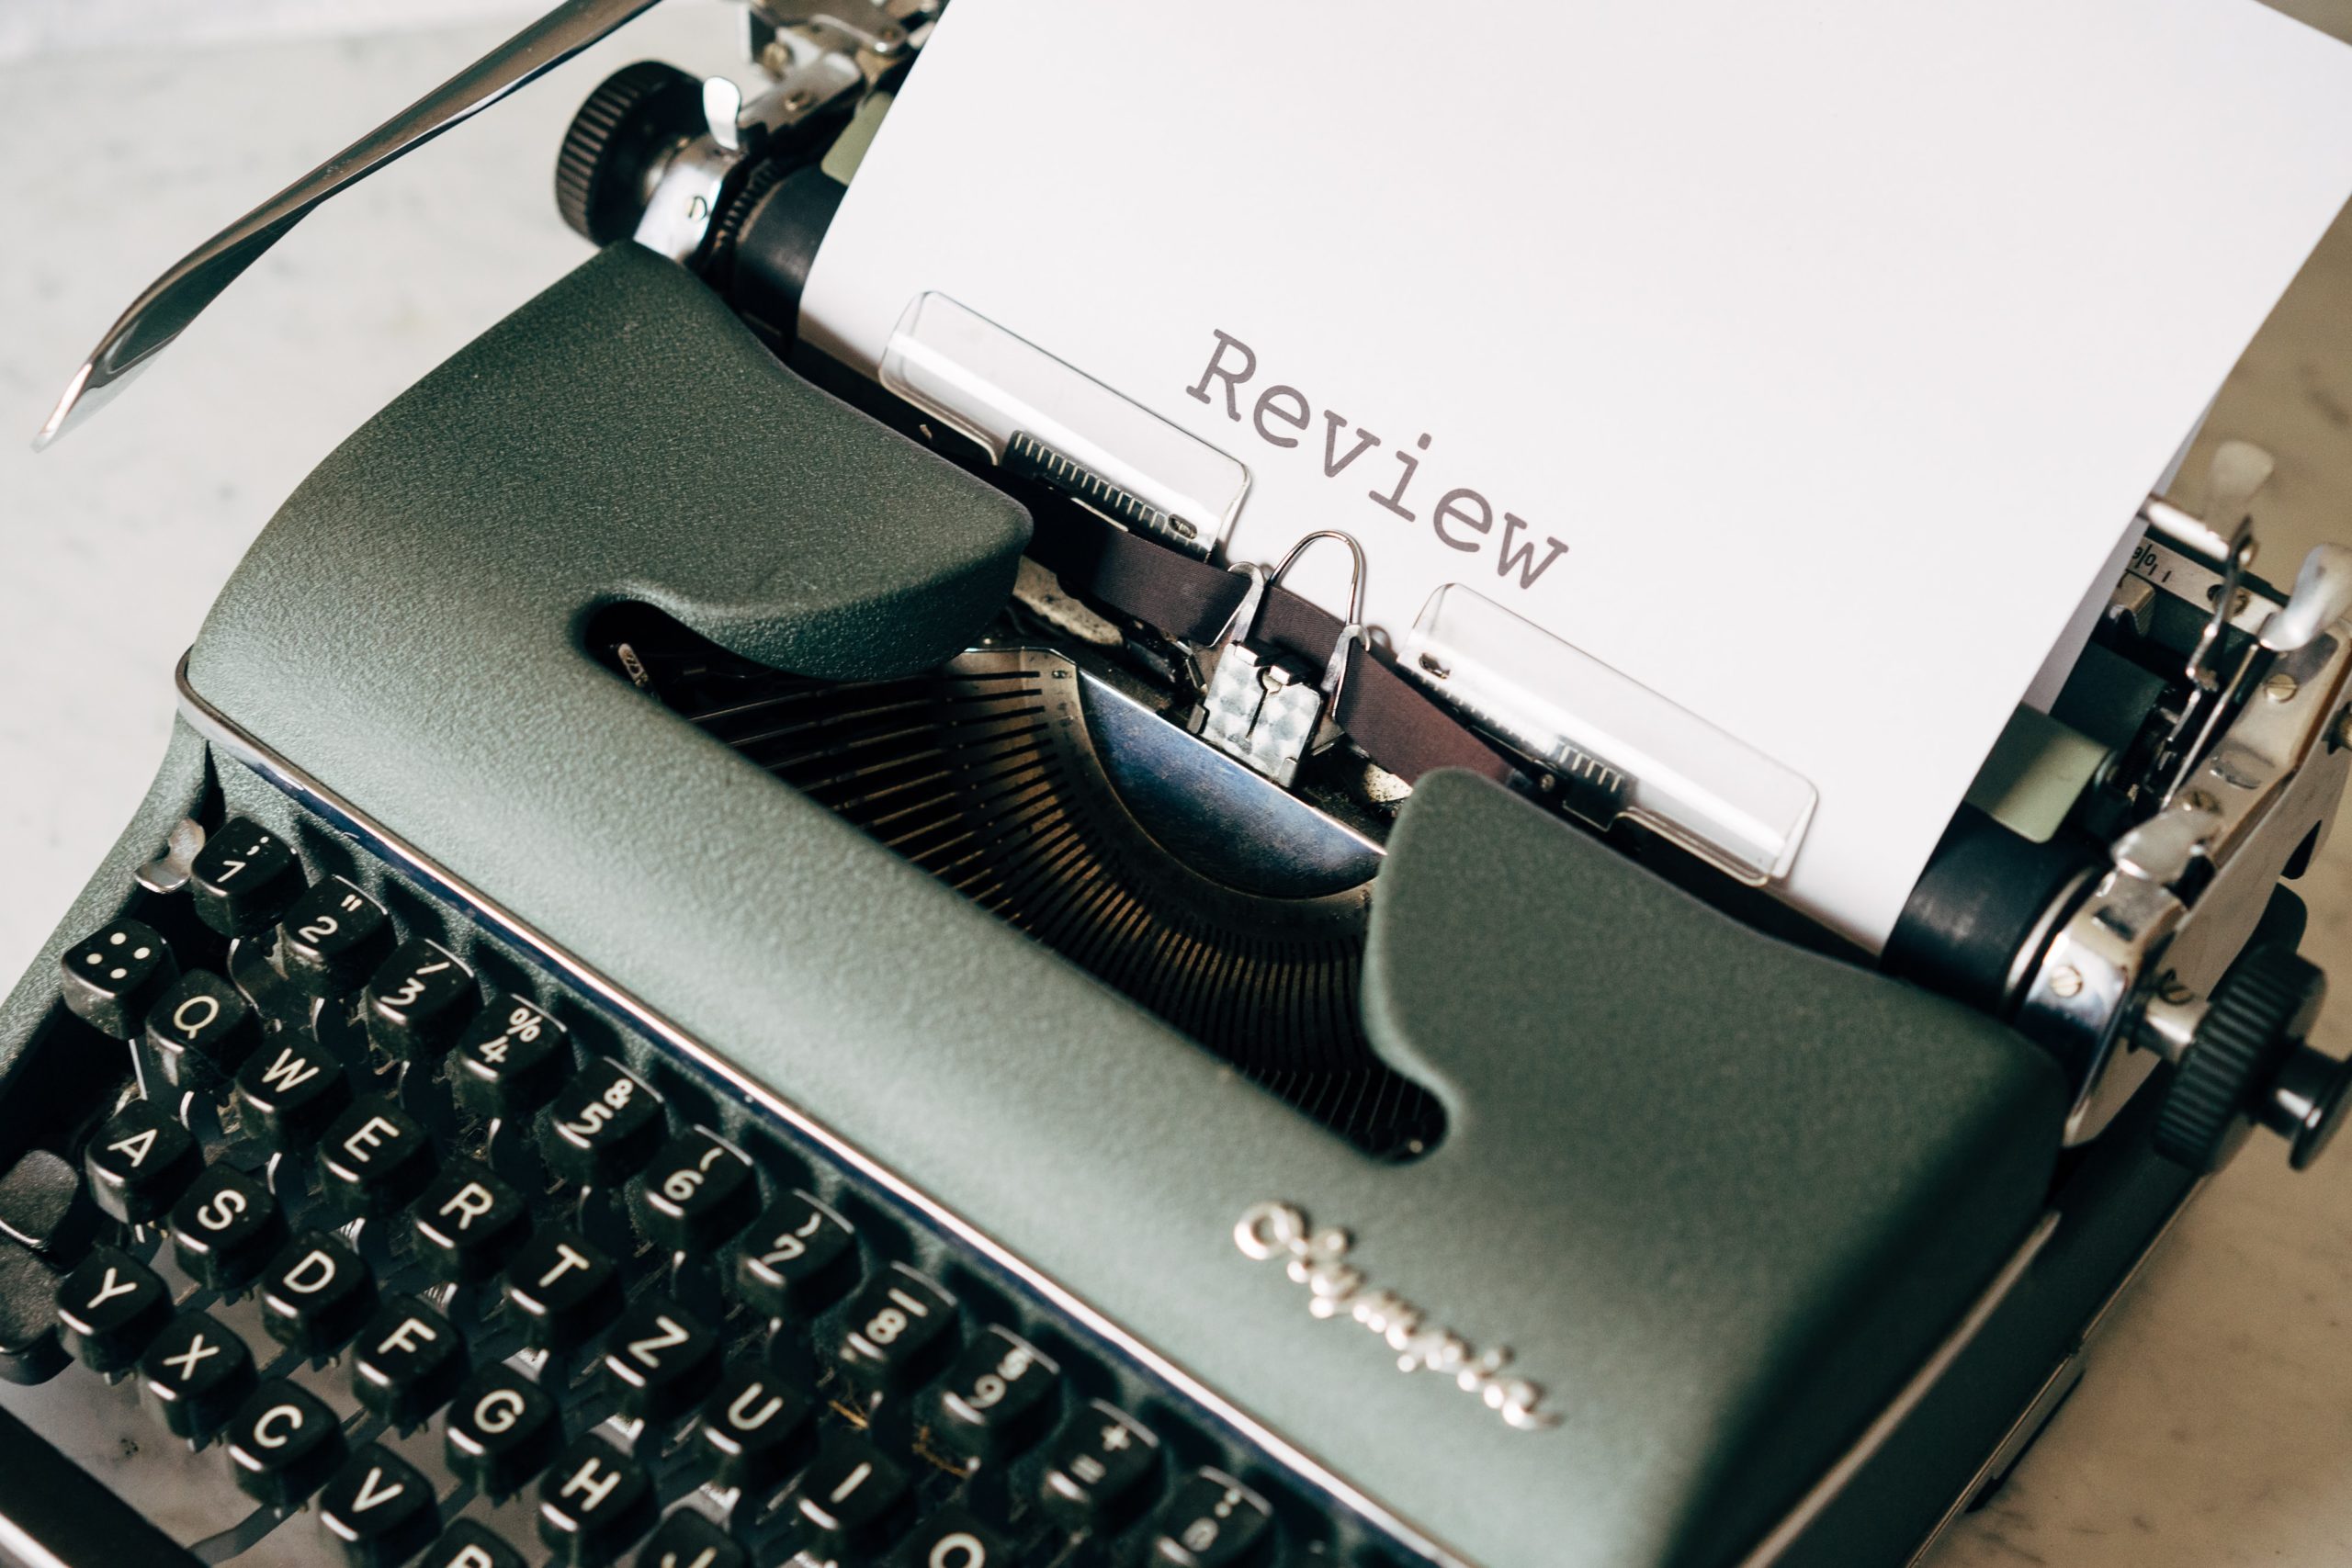 Review on Typewriter